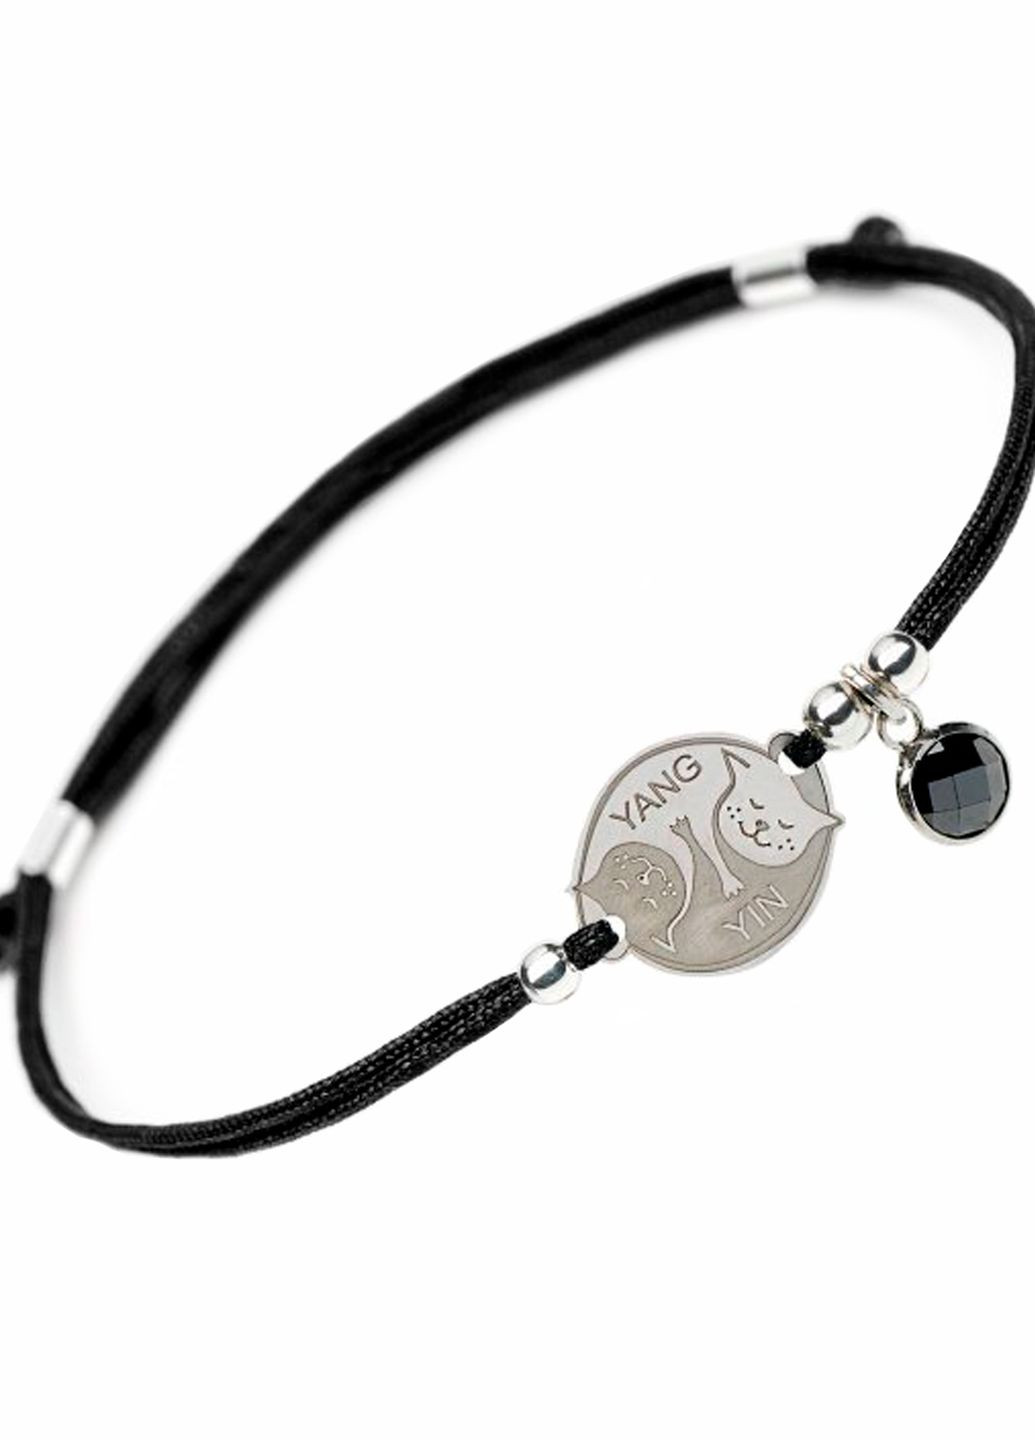 Срібний браслет на чорній шовковій нитці Інь та Ян у вигляді кішок Yin Yang Family Tree Jewelry Line (266038550)